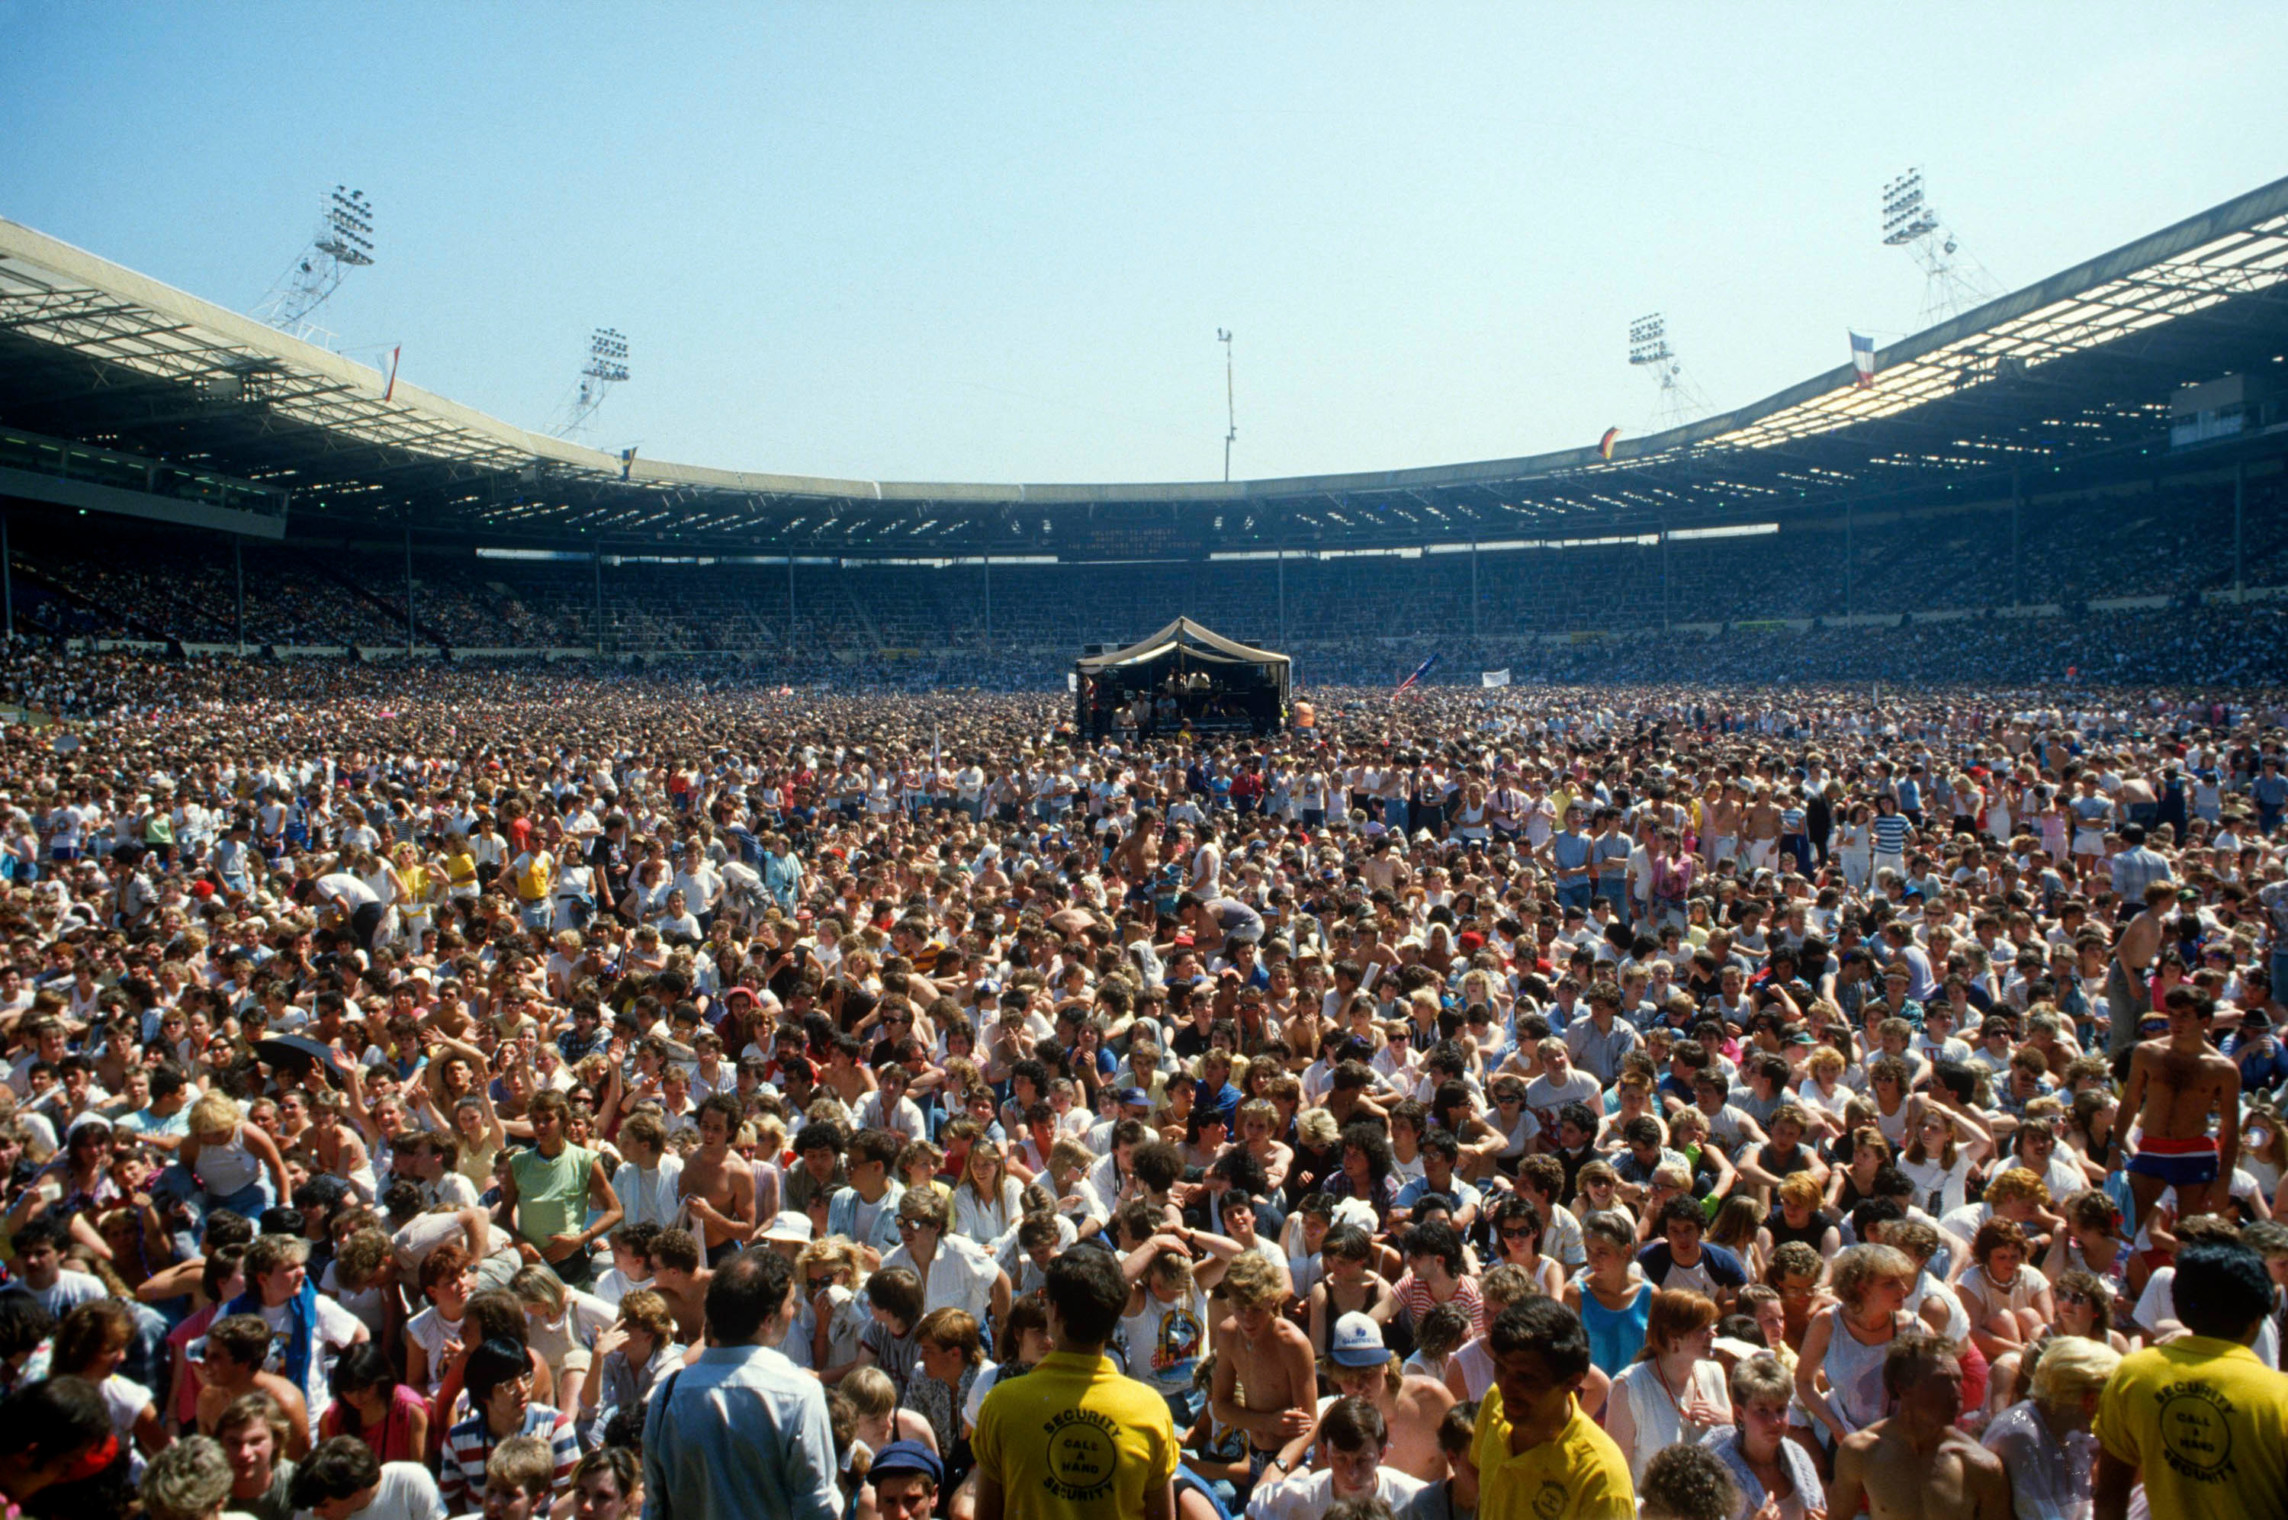 Концерт квин на стадионе. Концерт на Уэмбли 1985. Live Aid стадион Уэмбли. Queen Wembley 1985 концерт. Live Aid 1985 Wembley.